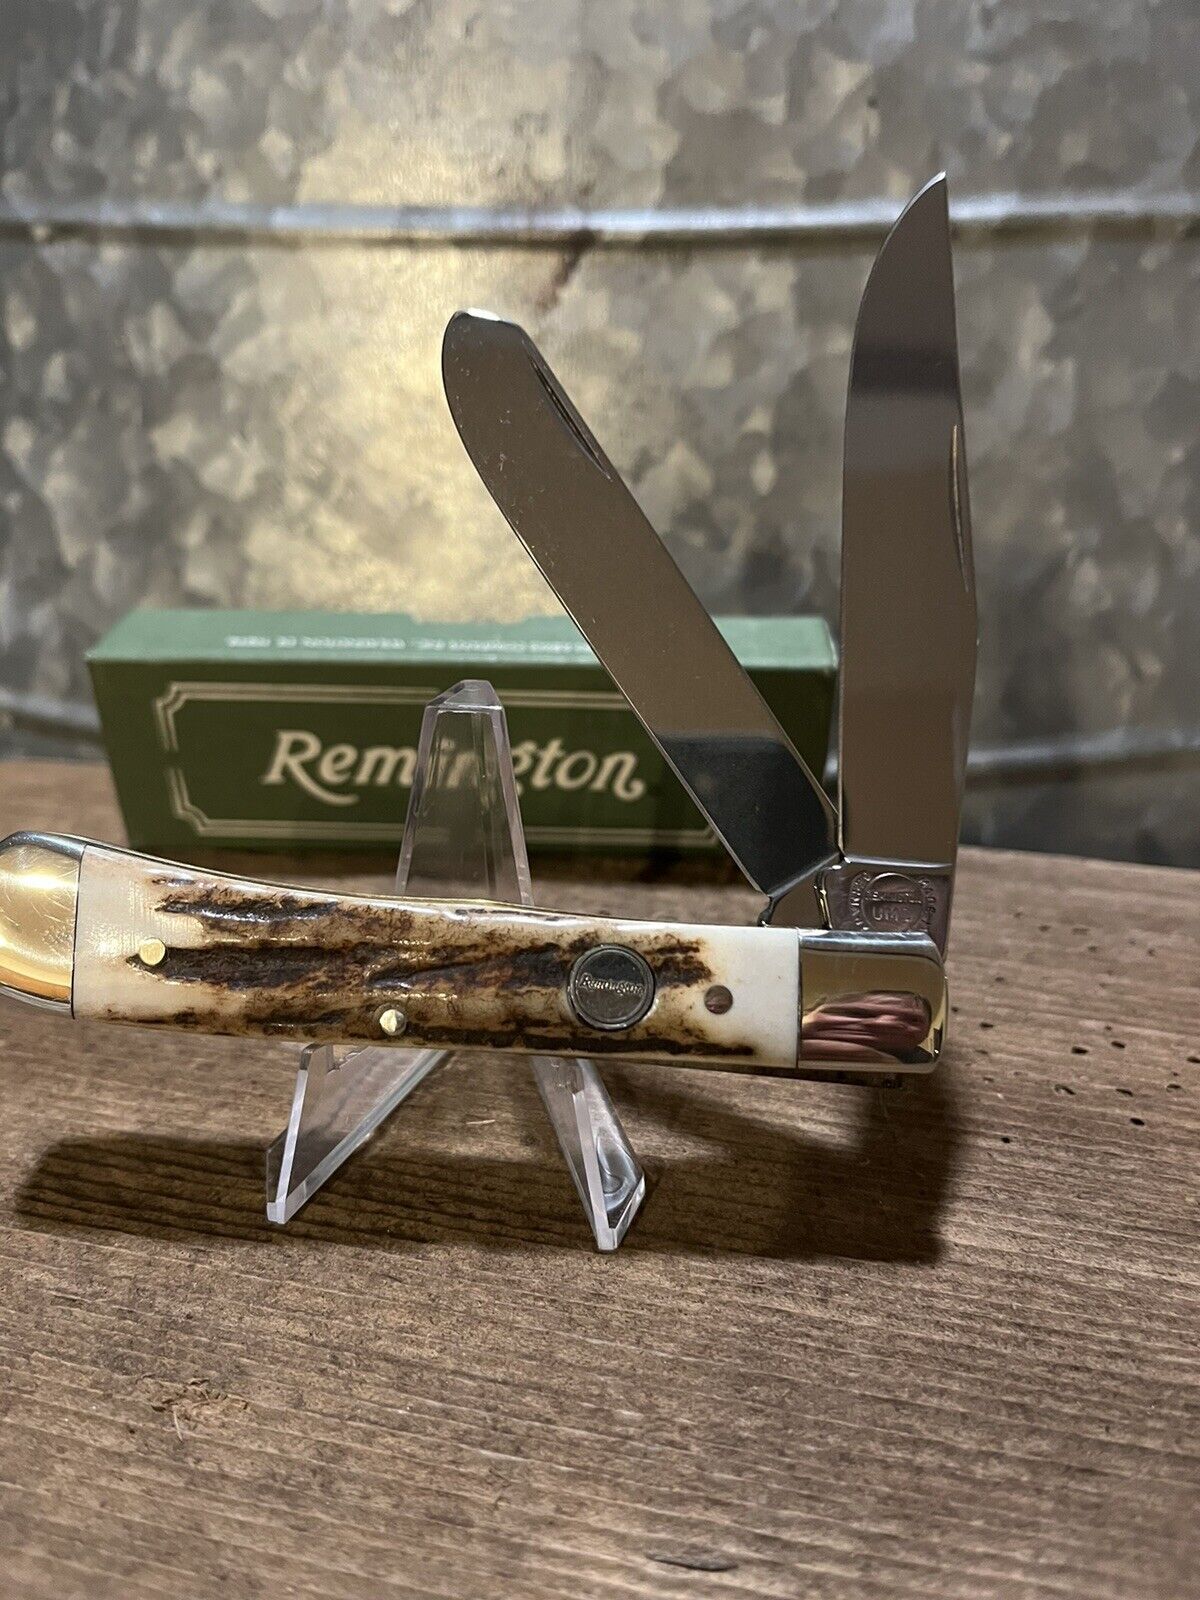 Remington stag, trapper, rare knife